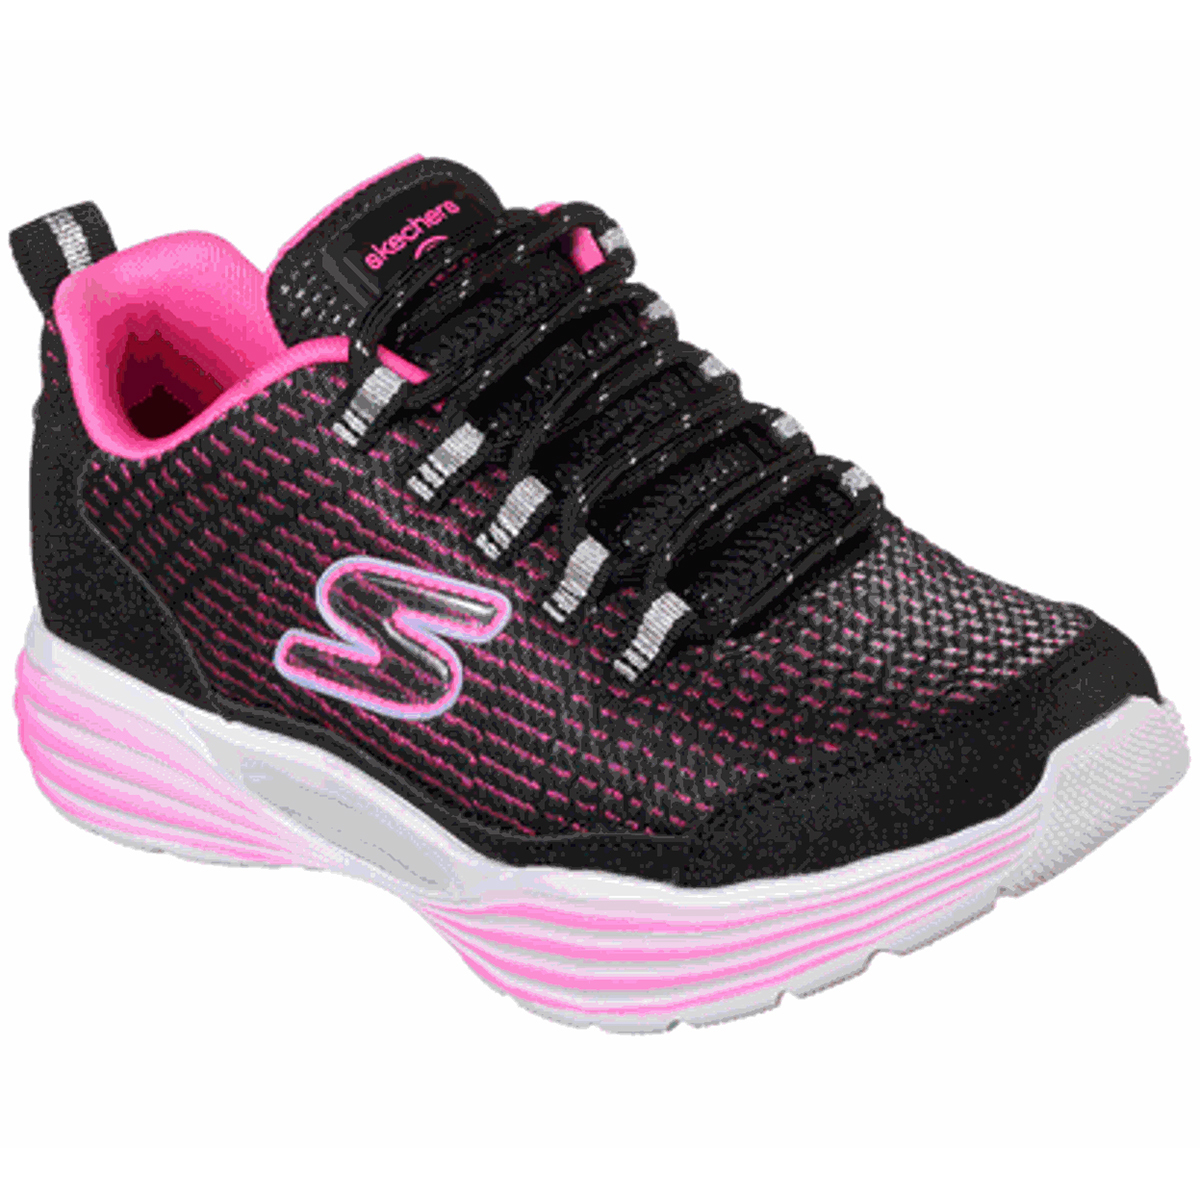 Skechers Little Girls' S Lights: Luminators Luxe Sneakers - Black, 2